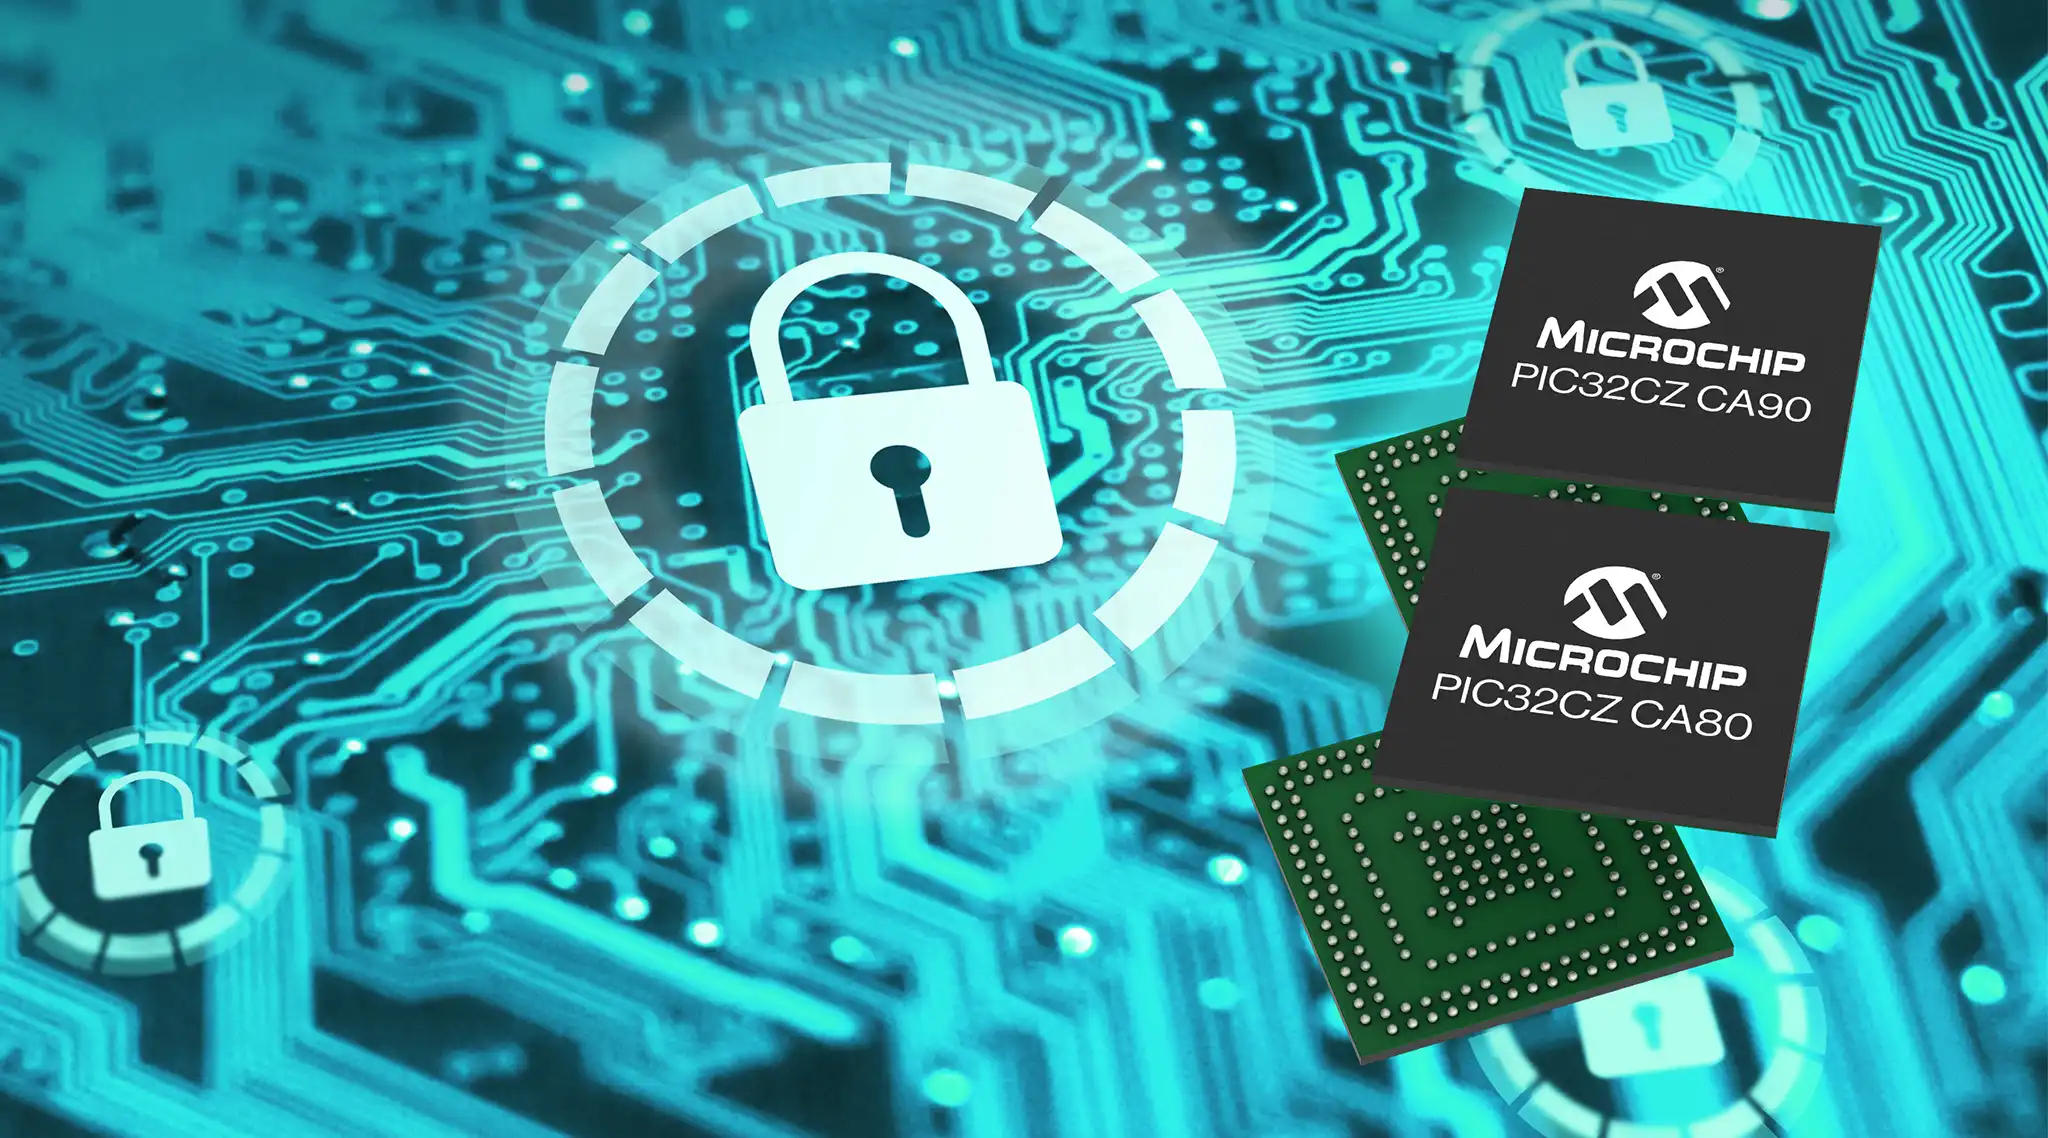 MCU 32-bit mới được trang bị mô-đun bảo mật phần cứng nhúng để bảo vệ các ứng dụng công nghiệp và tiêu dùng